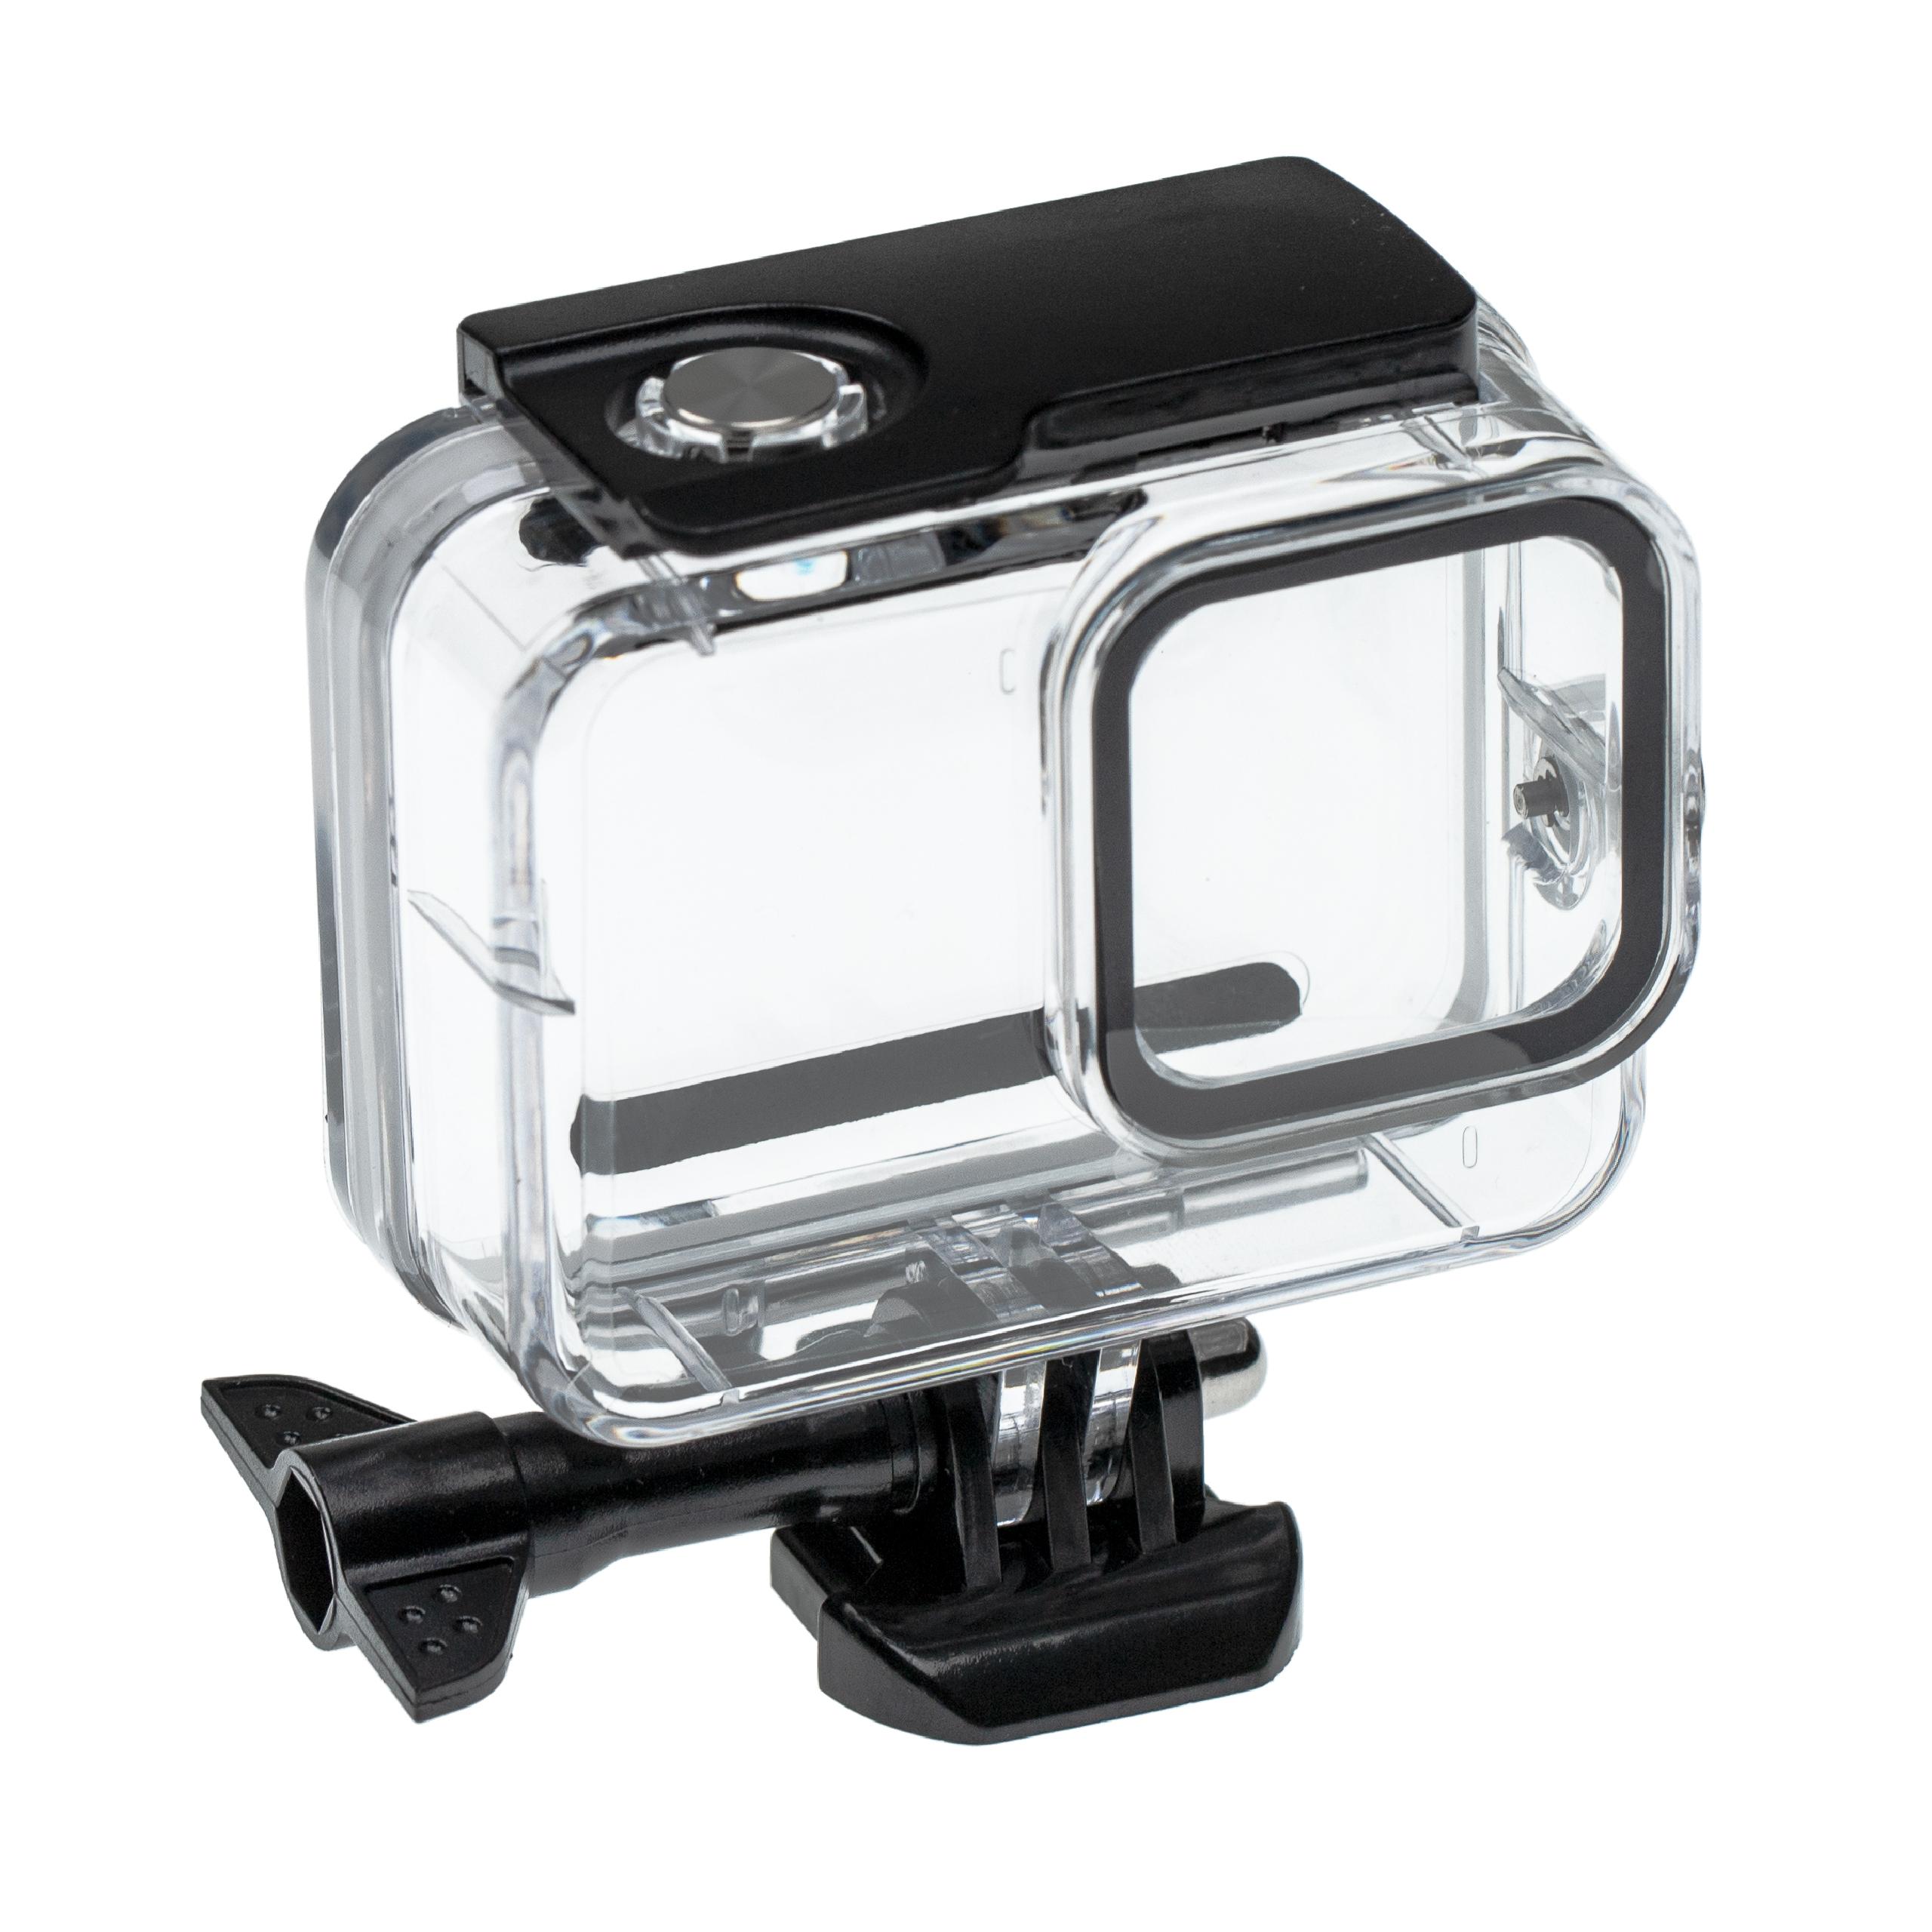 Carcasa sumergible para cámaras acción GoPro Hero 8 - Profundidad máx. 60 m